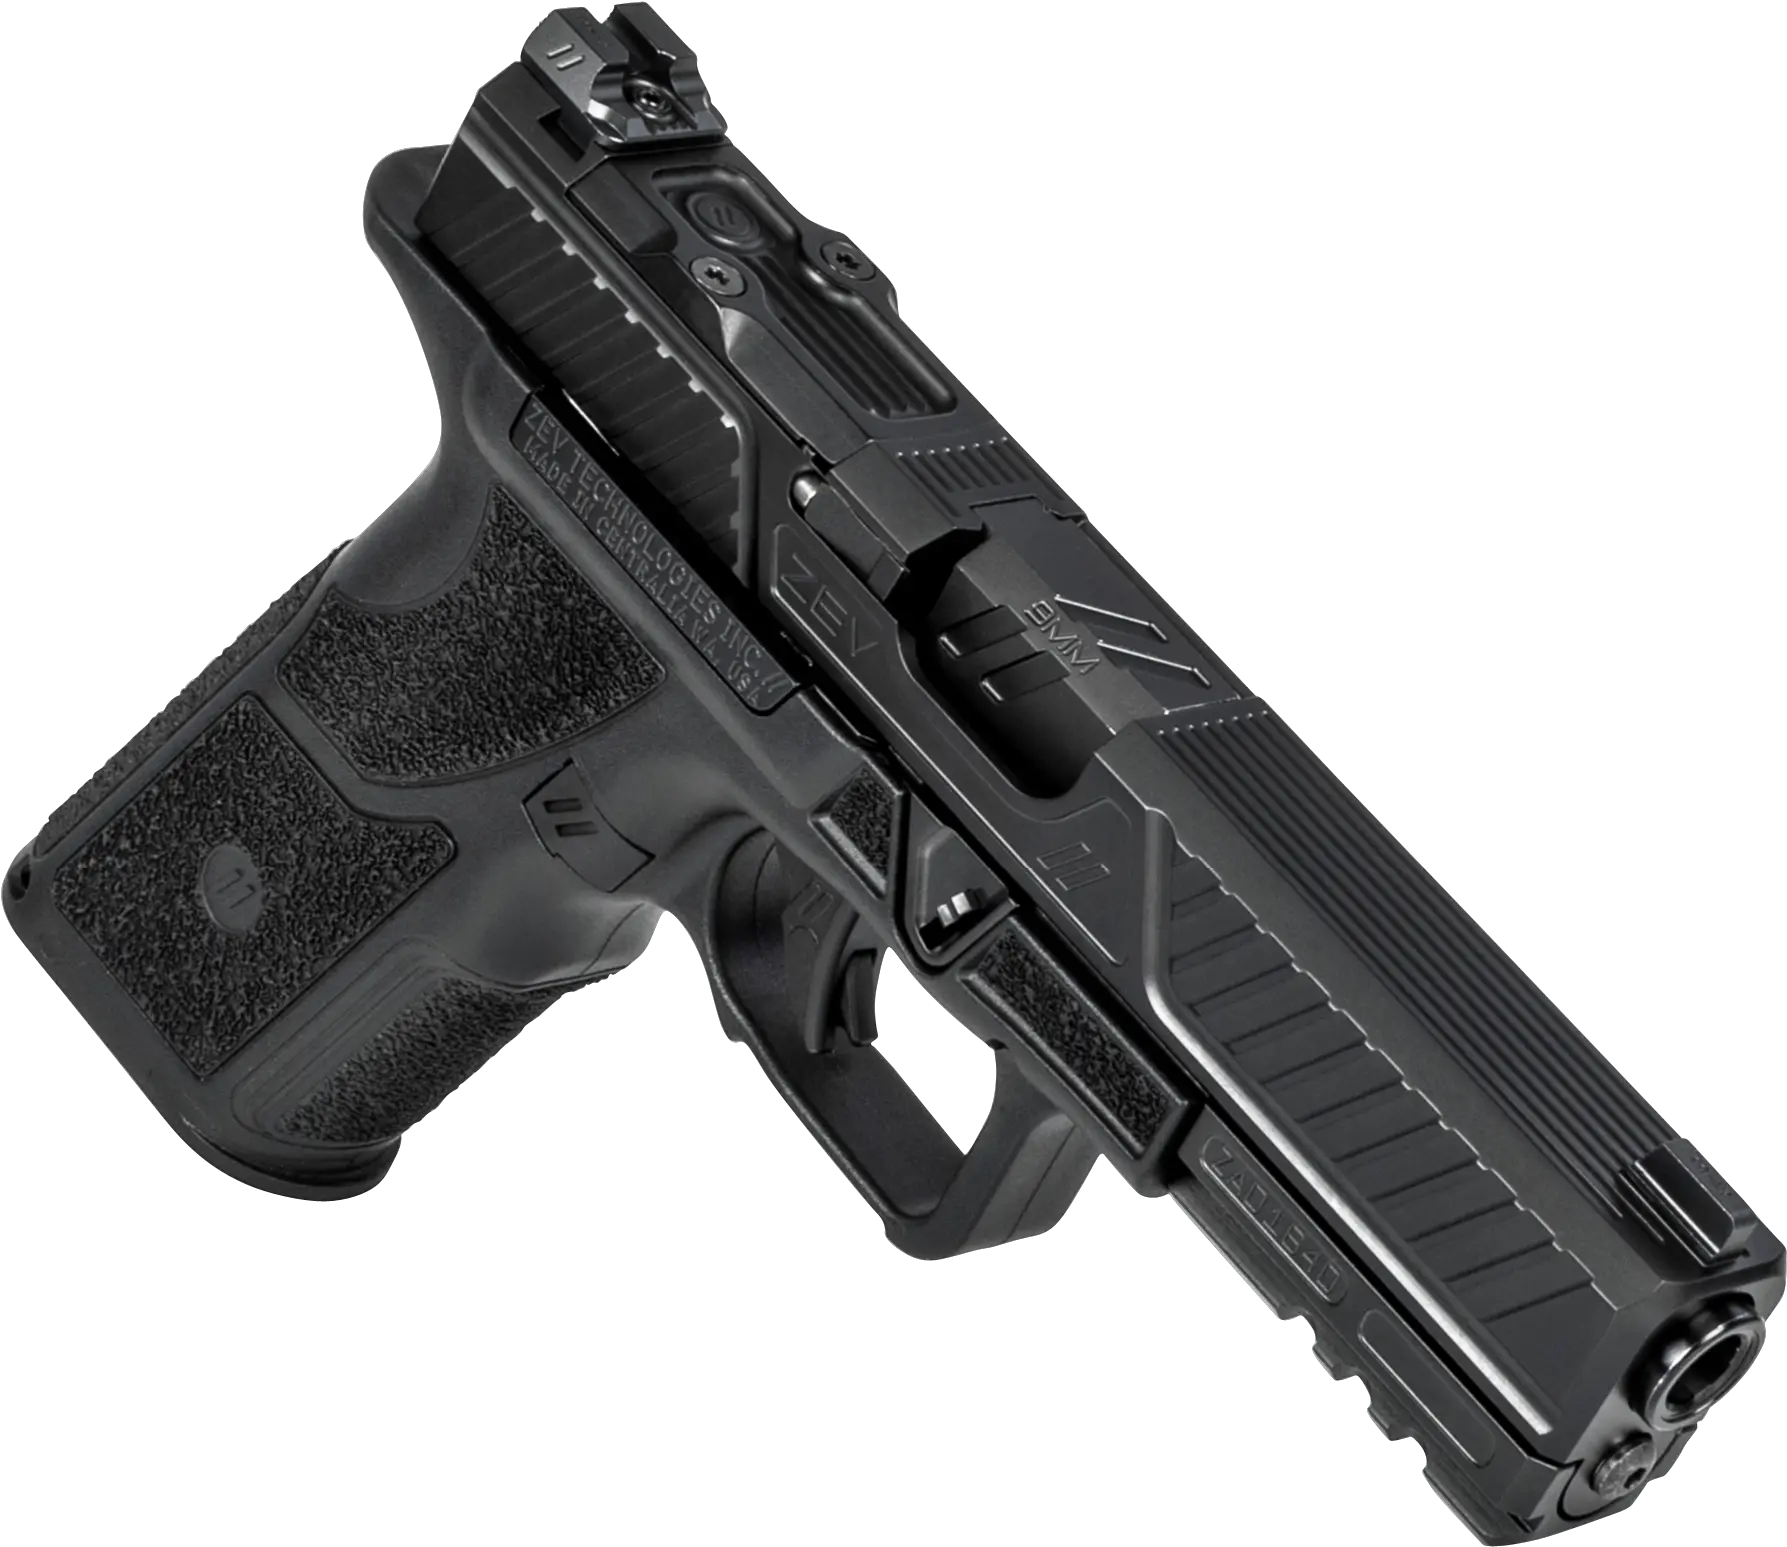 Zev Oz9stdbbns Oz9 Standard 9mm Luger 171 Black Zev Tech Oz9 Png Holding Gun Transparent